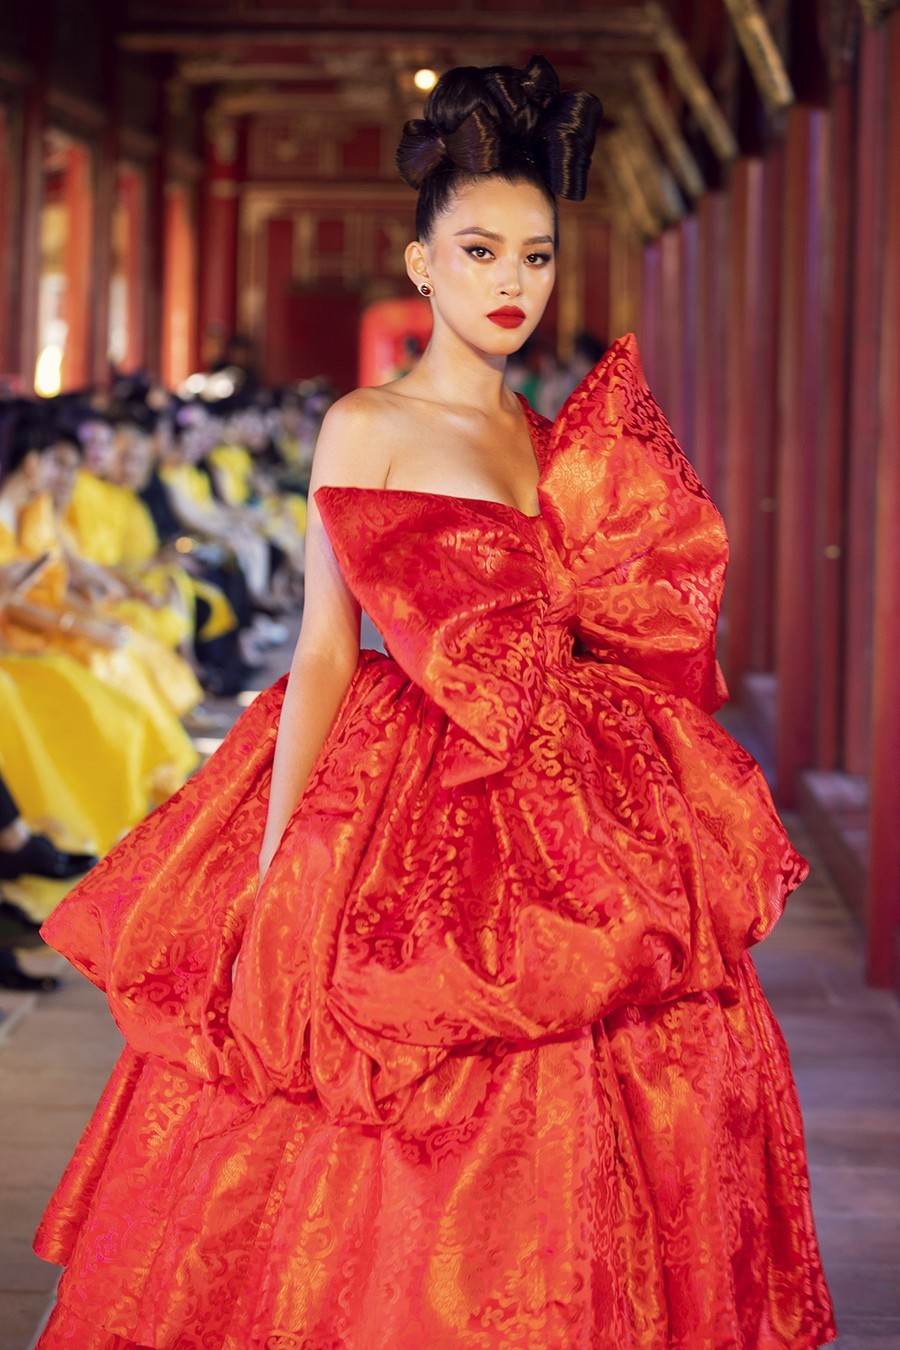 Hoa hậu Tiểu Vy diện đầm đỏ nổi bật với thiết kế nơ to bản trước ngực tạo dấu ấn riêng